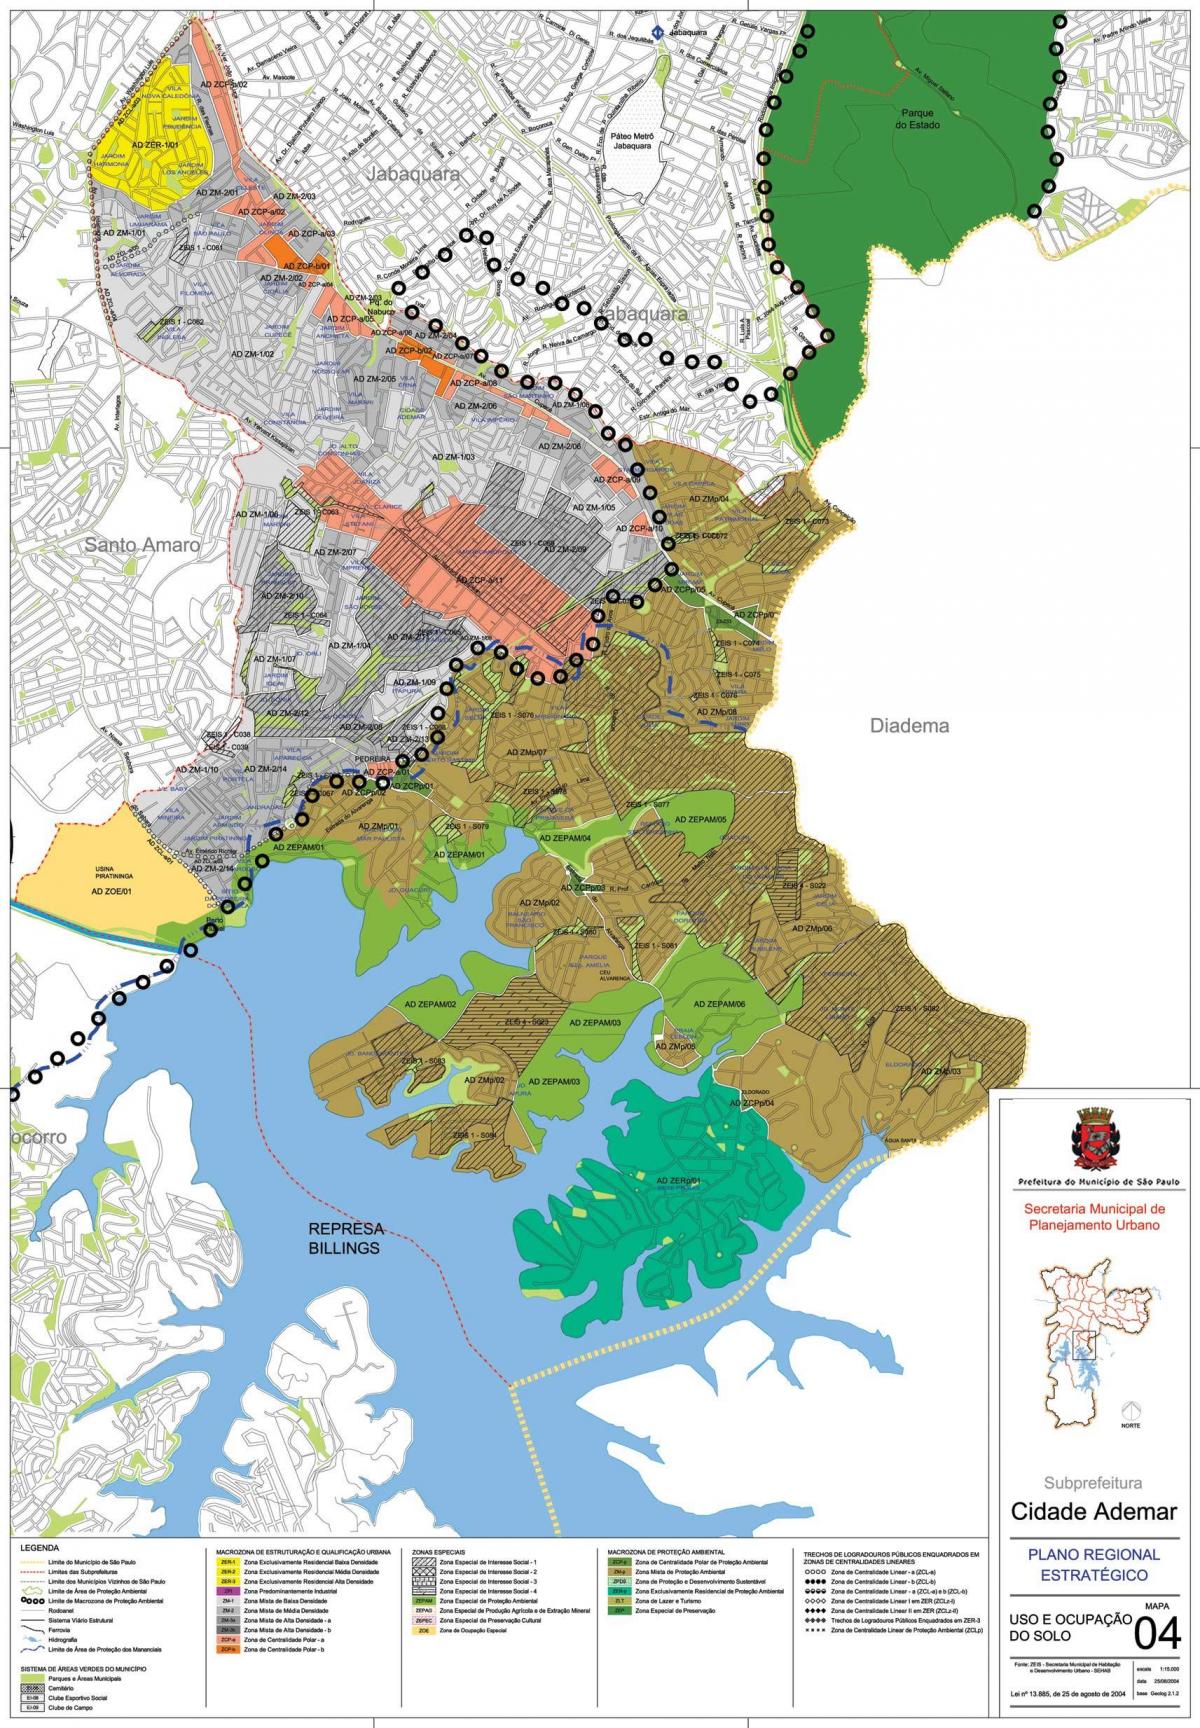 Mapa Сидаде Адемаре Sao Paulo - przechwytywanie ziemi